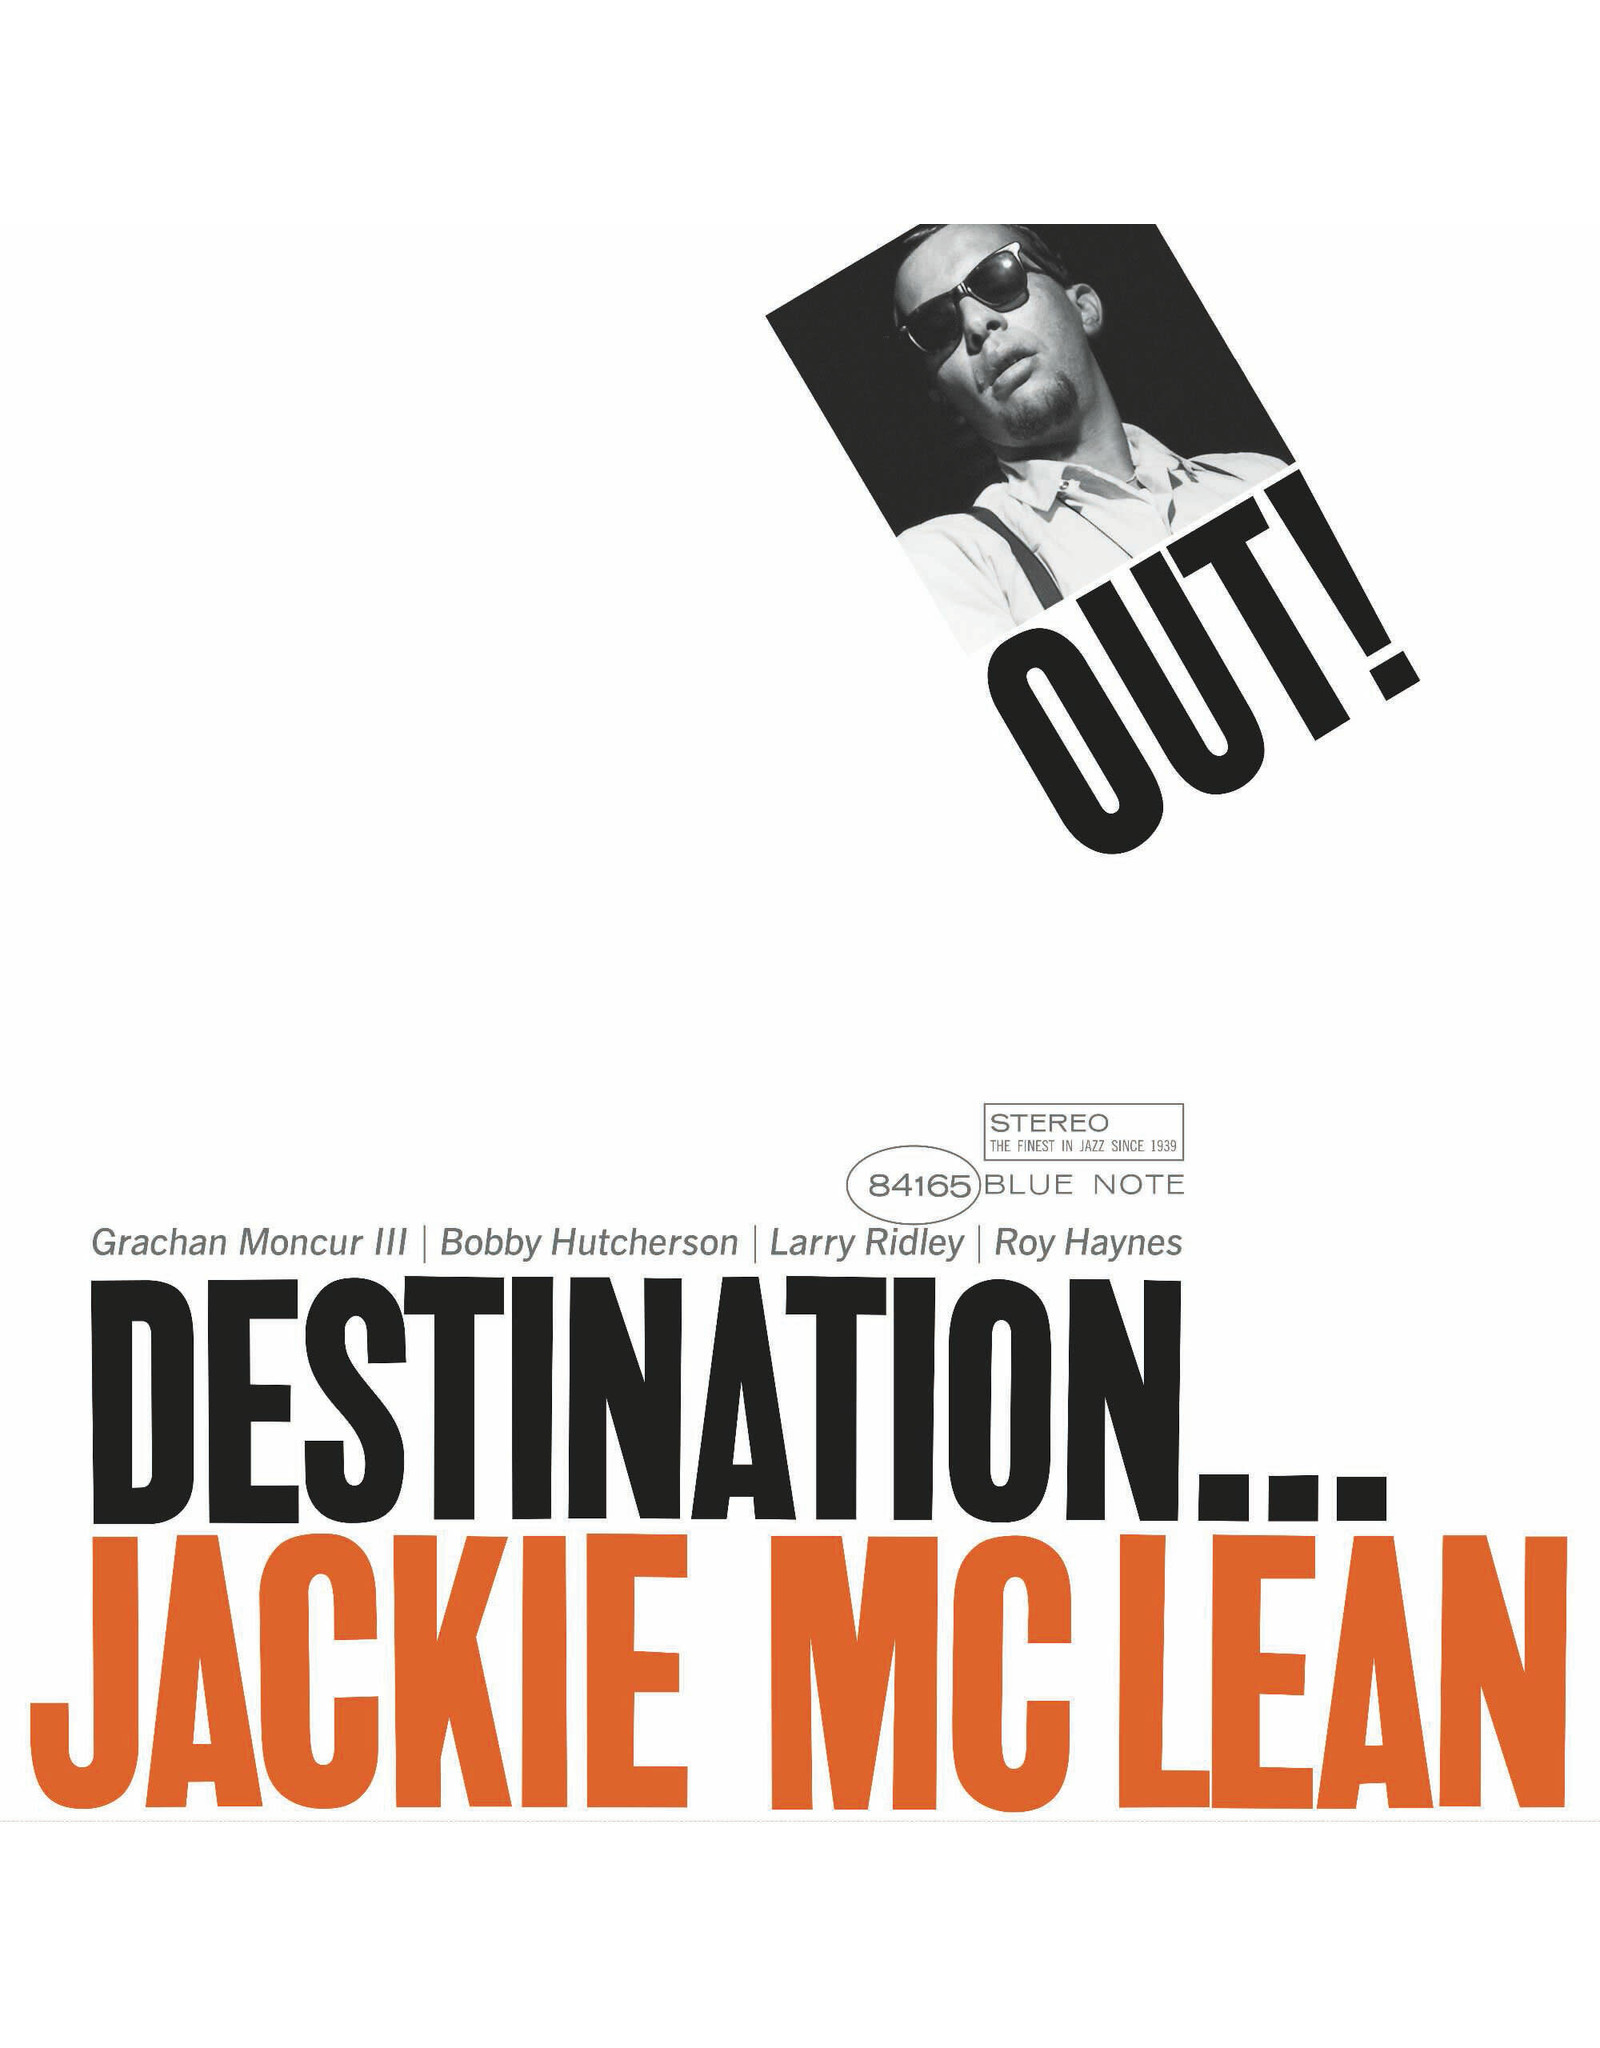 McLean, Jackie - Destination... Out LP (Blue Note Classic)